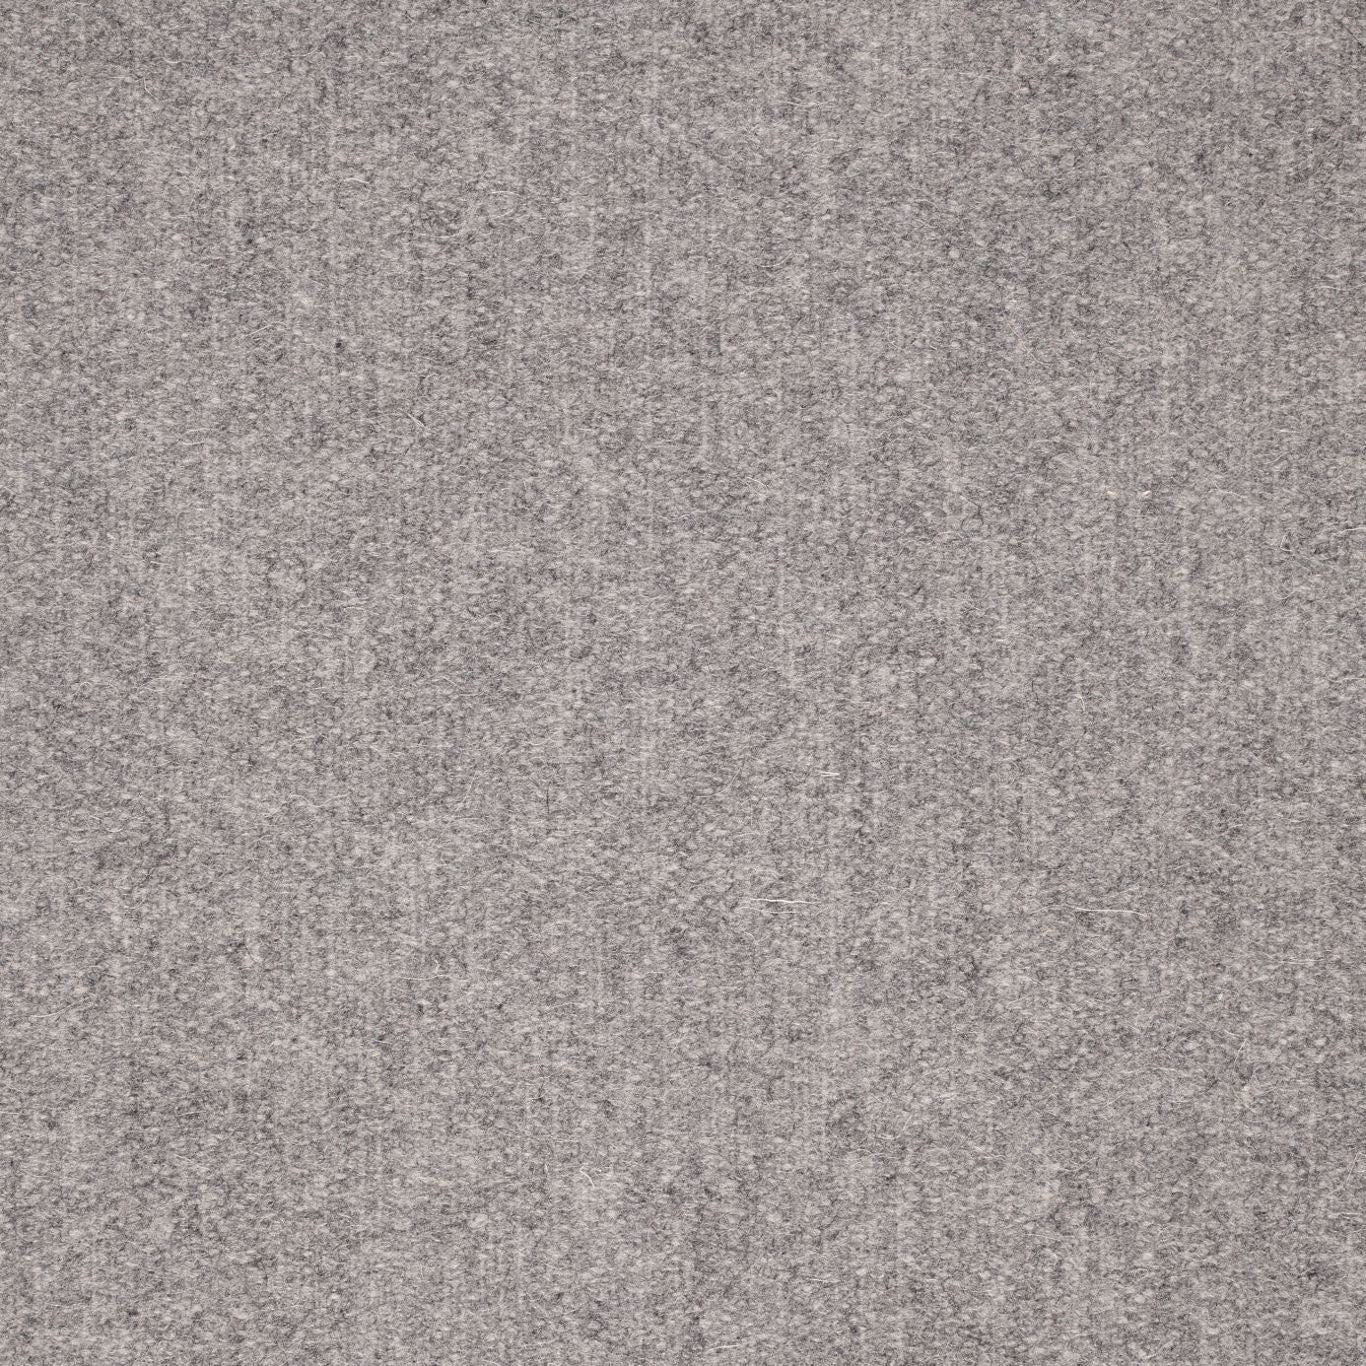 Byron Wool Plain Fabric by Sanderson - DWOL235297 - Grey